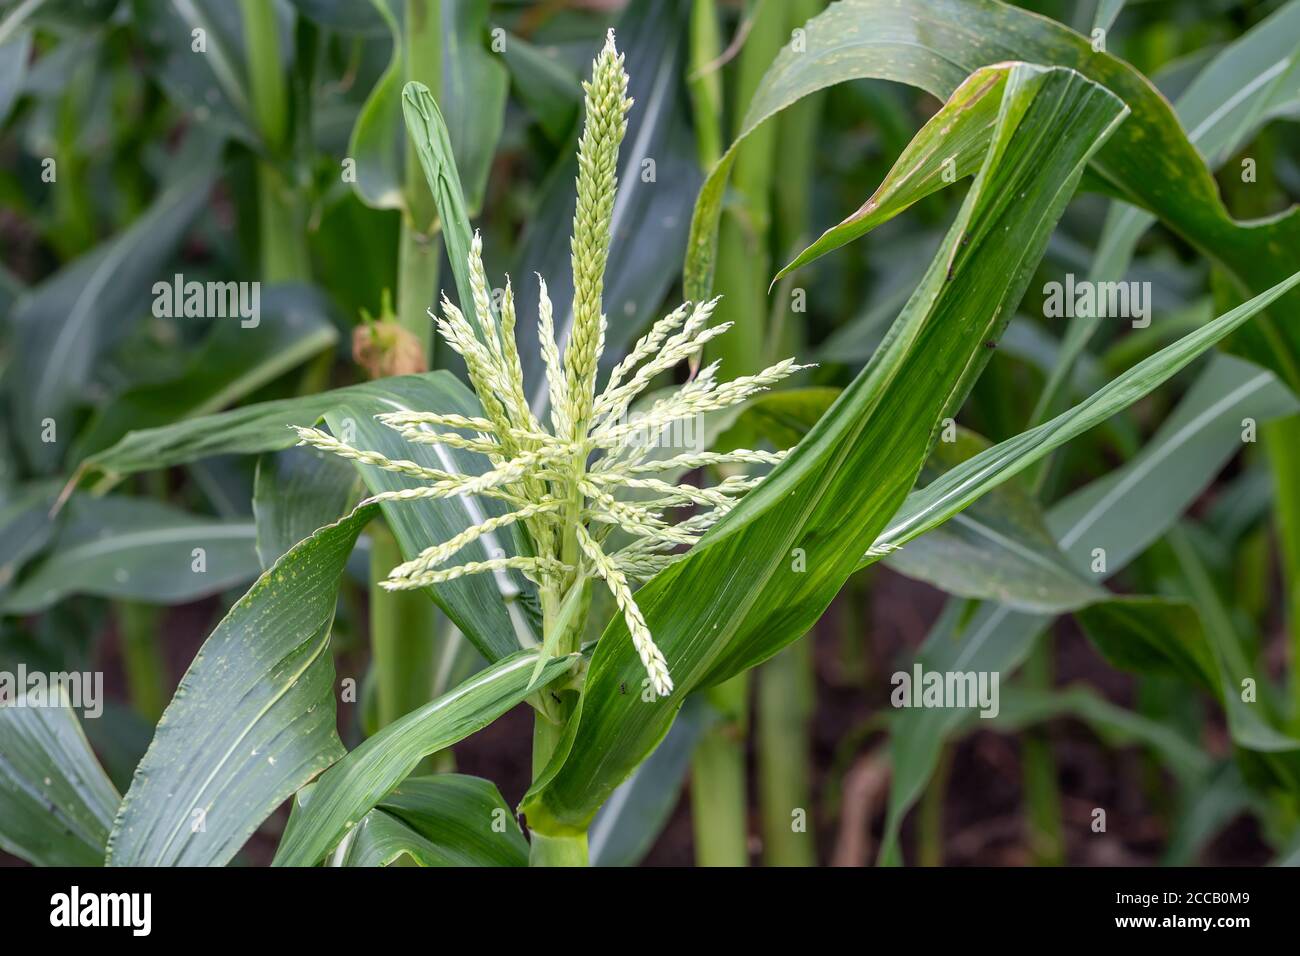 Die Maisseln auf der Maispflanze, im Garten wachsend. Stockfoto